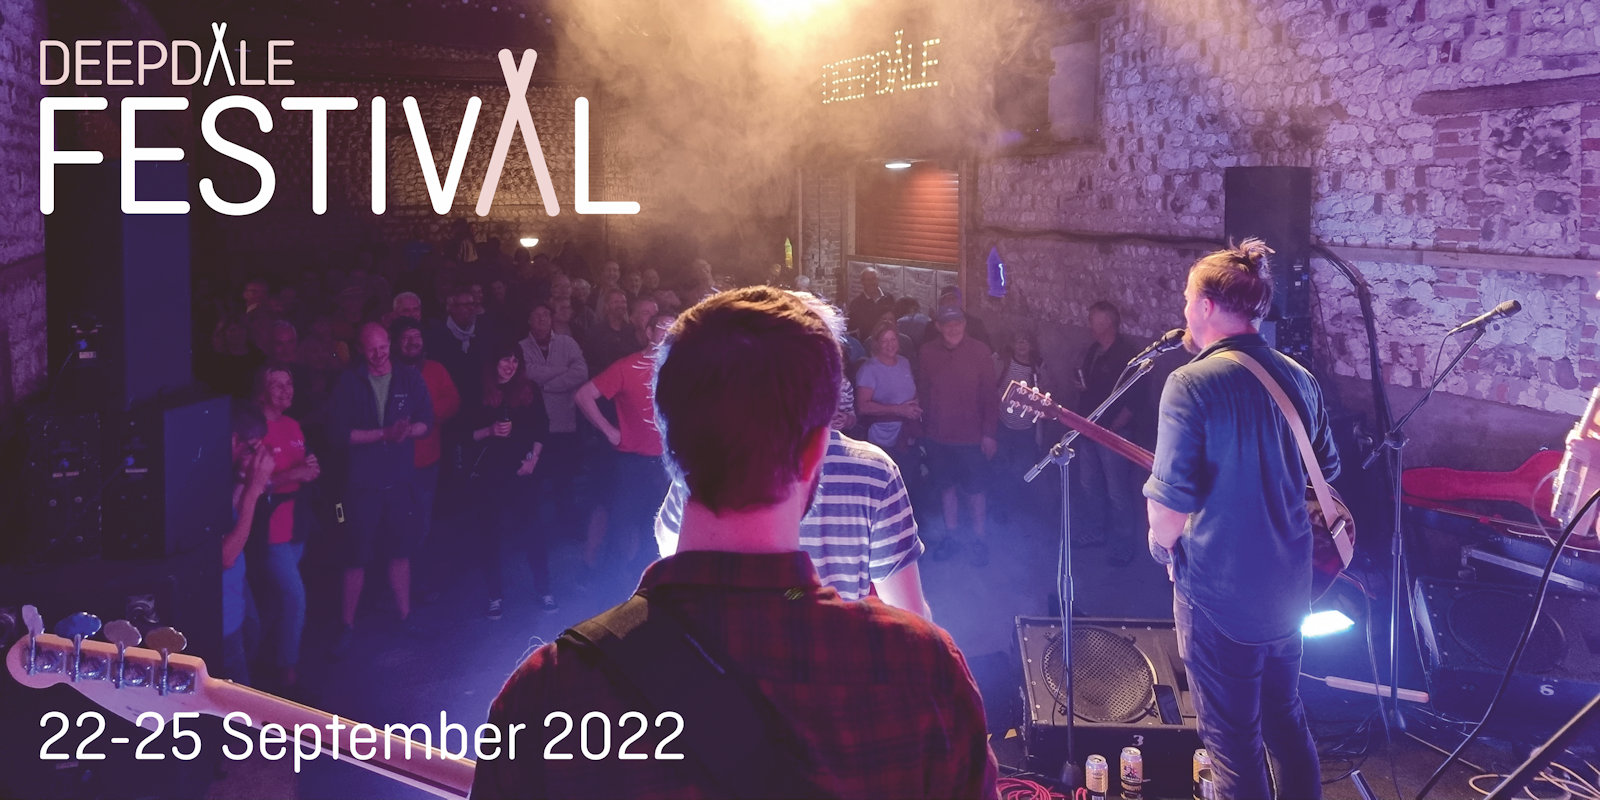 Deepdale Festival | 23rd to 26th September 2021